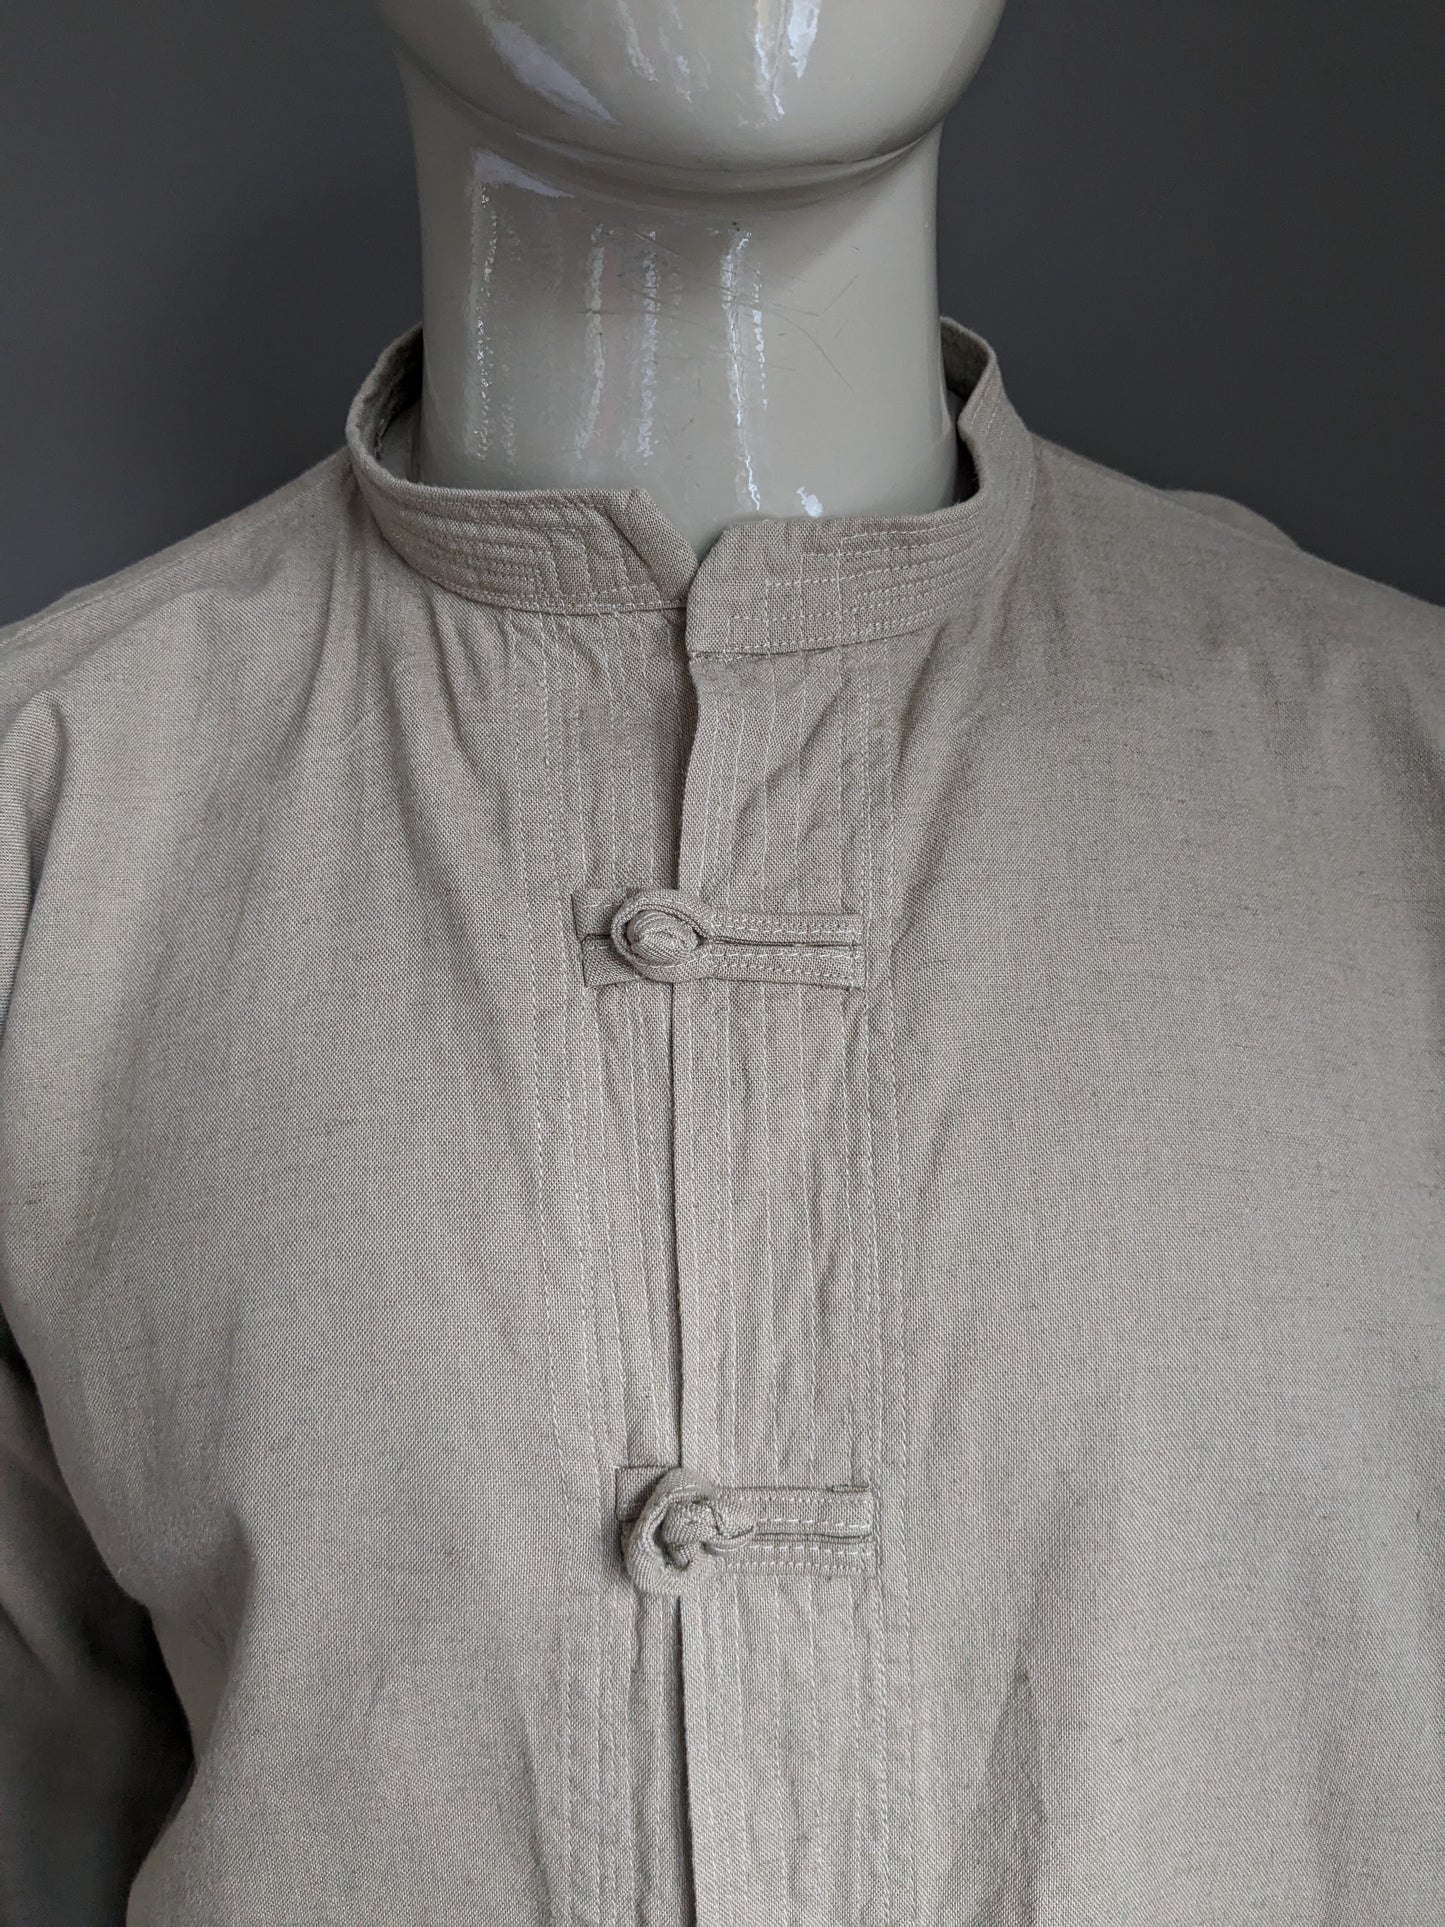 Camicia vintage con bottoni in tessuto e collare MAO / ALEAZIONE / FARMER. Beige colorato. Dimensione 2xl / xxl.